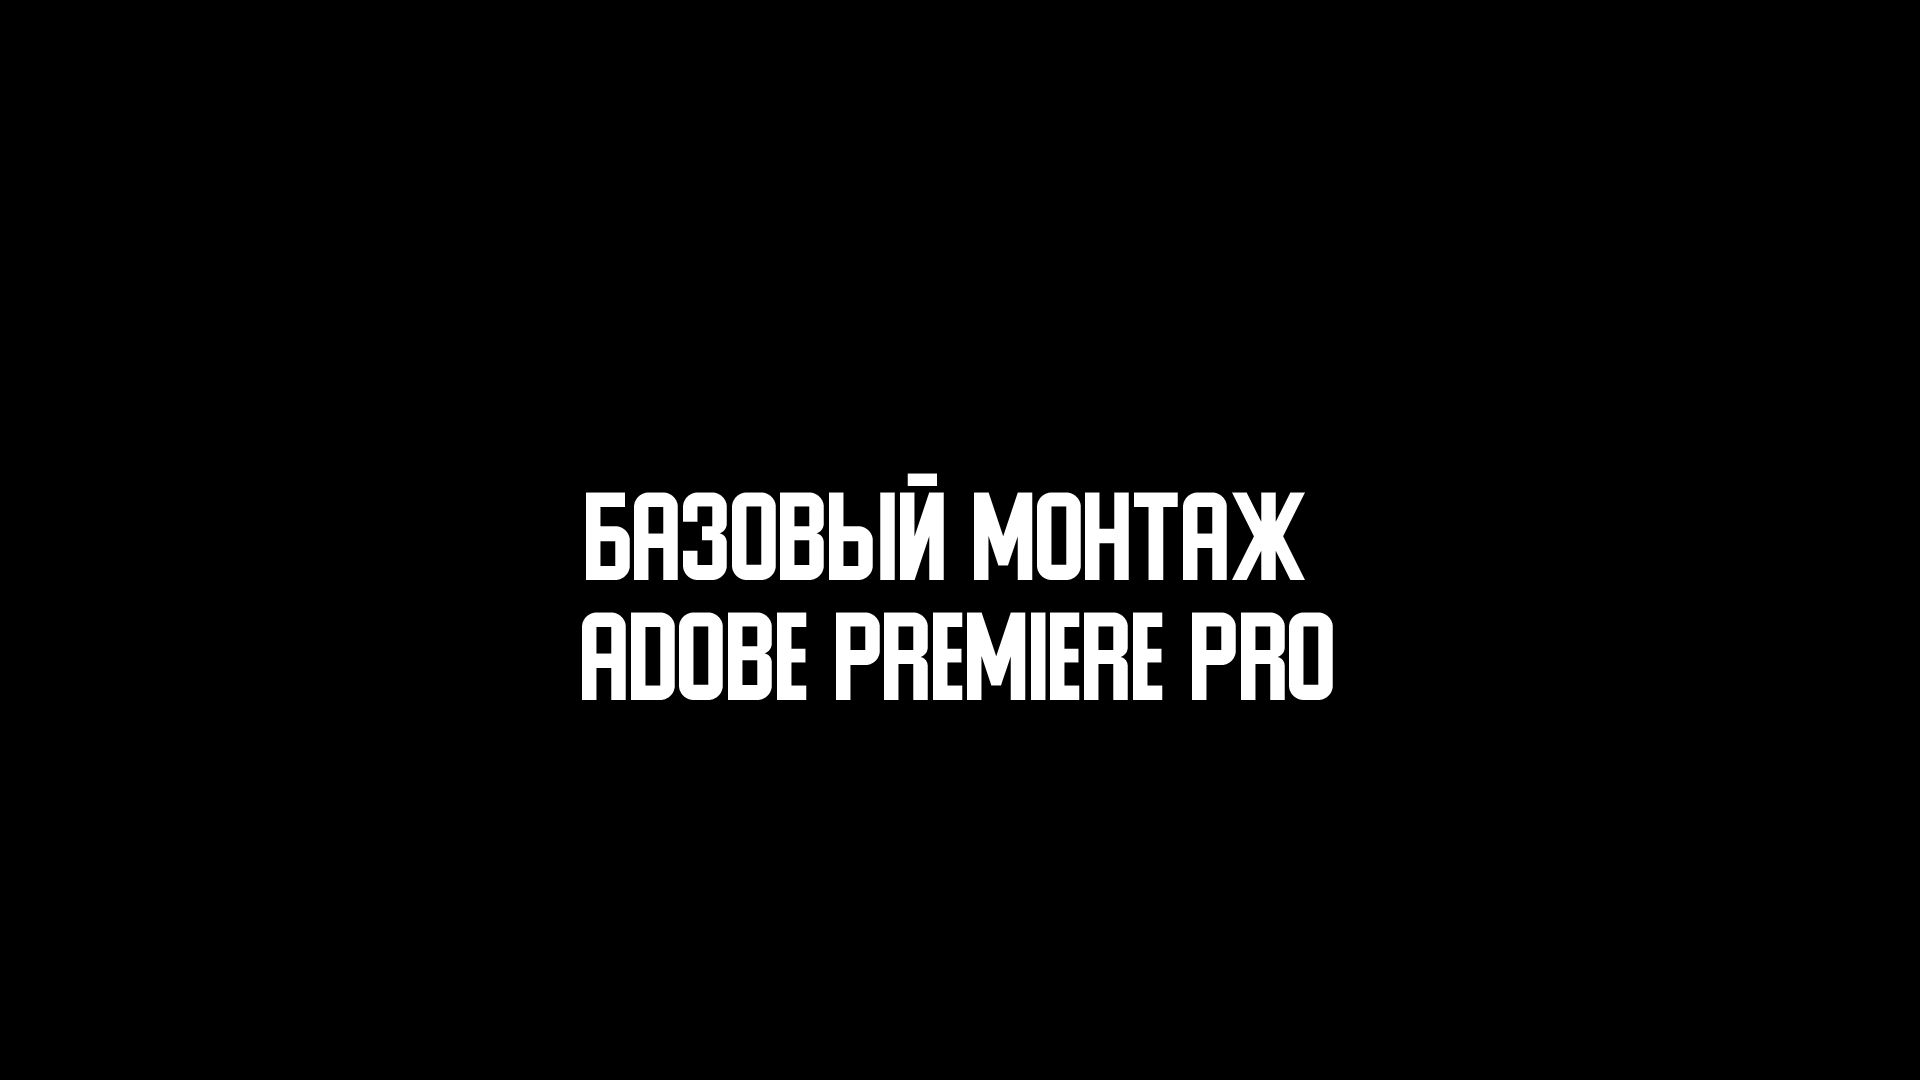 Монтаж в Adobe Premiere Pro